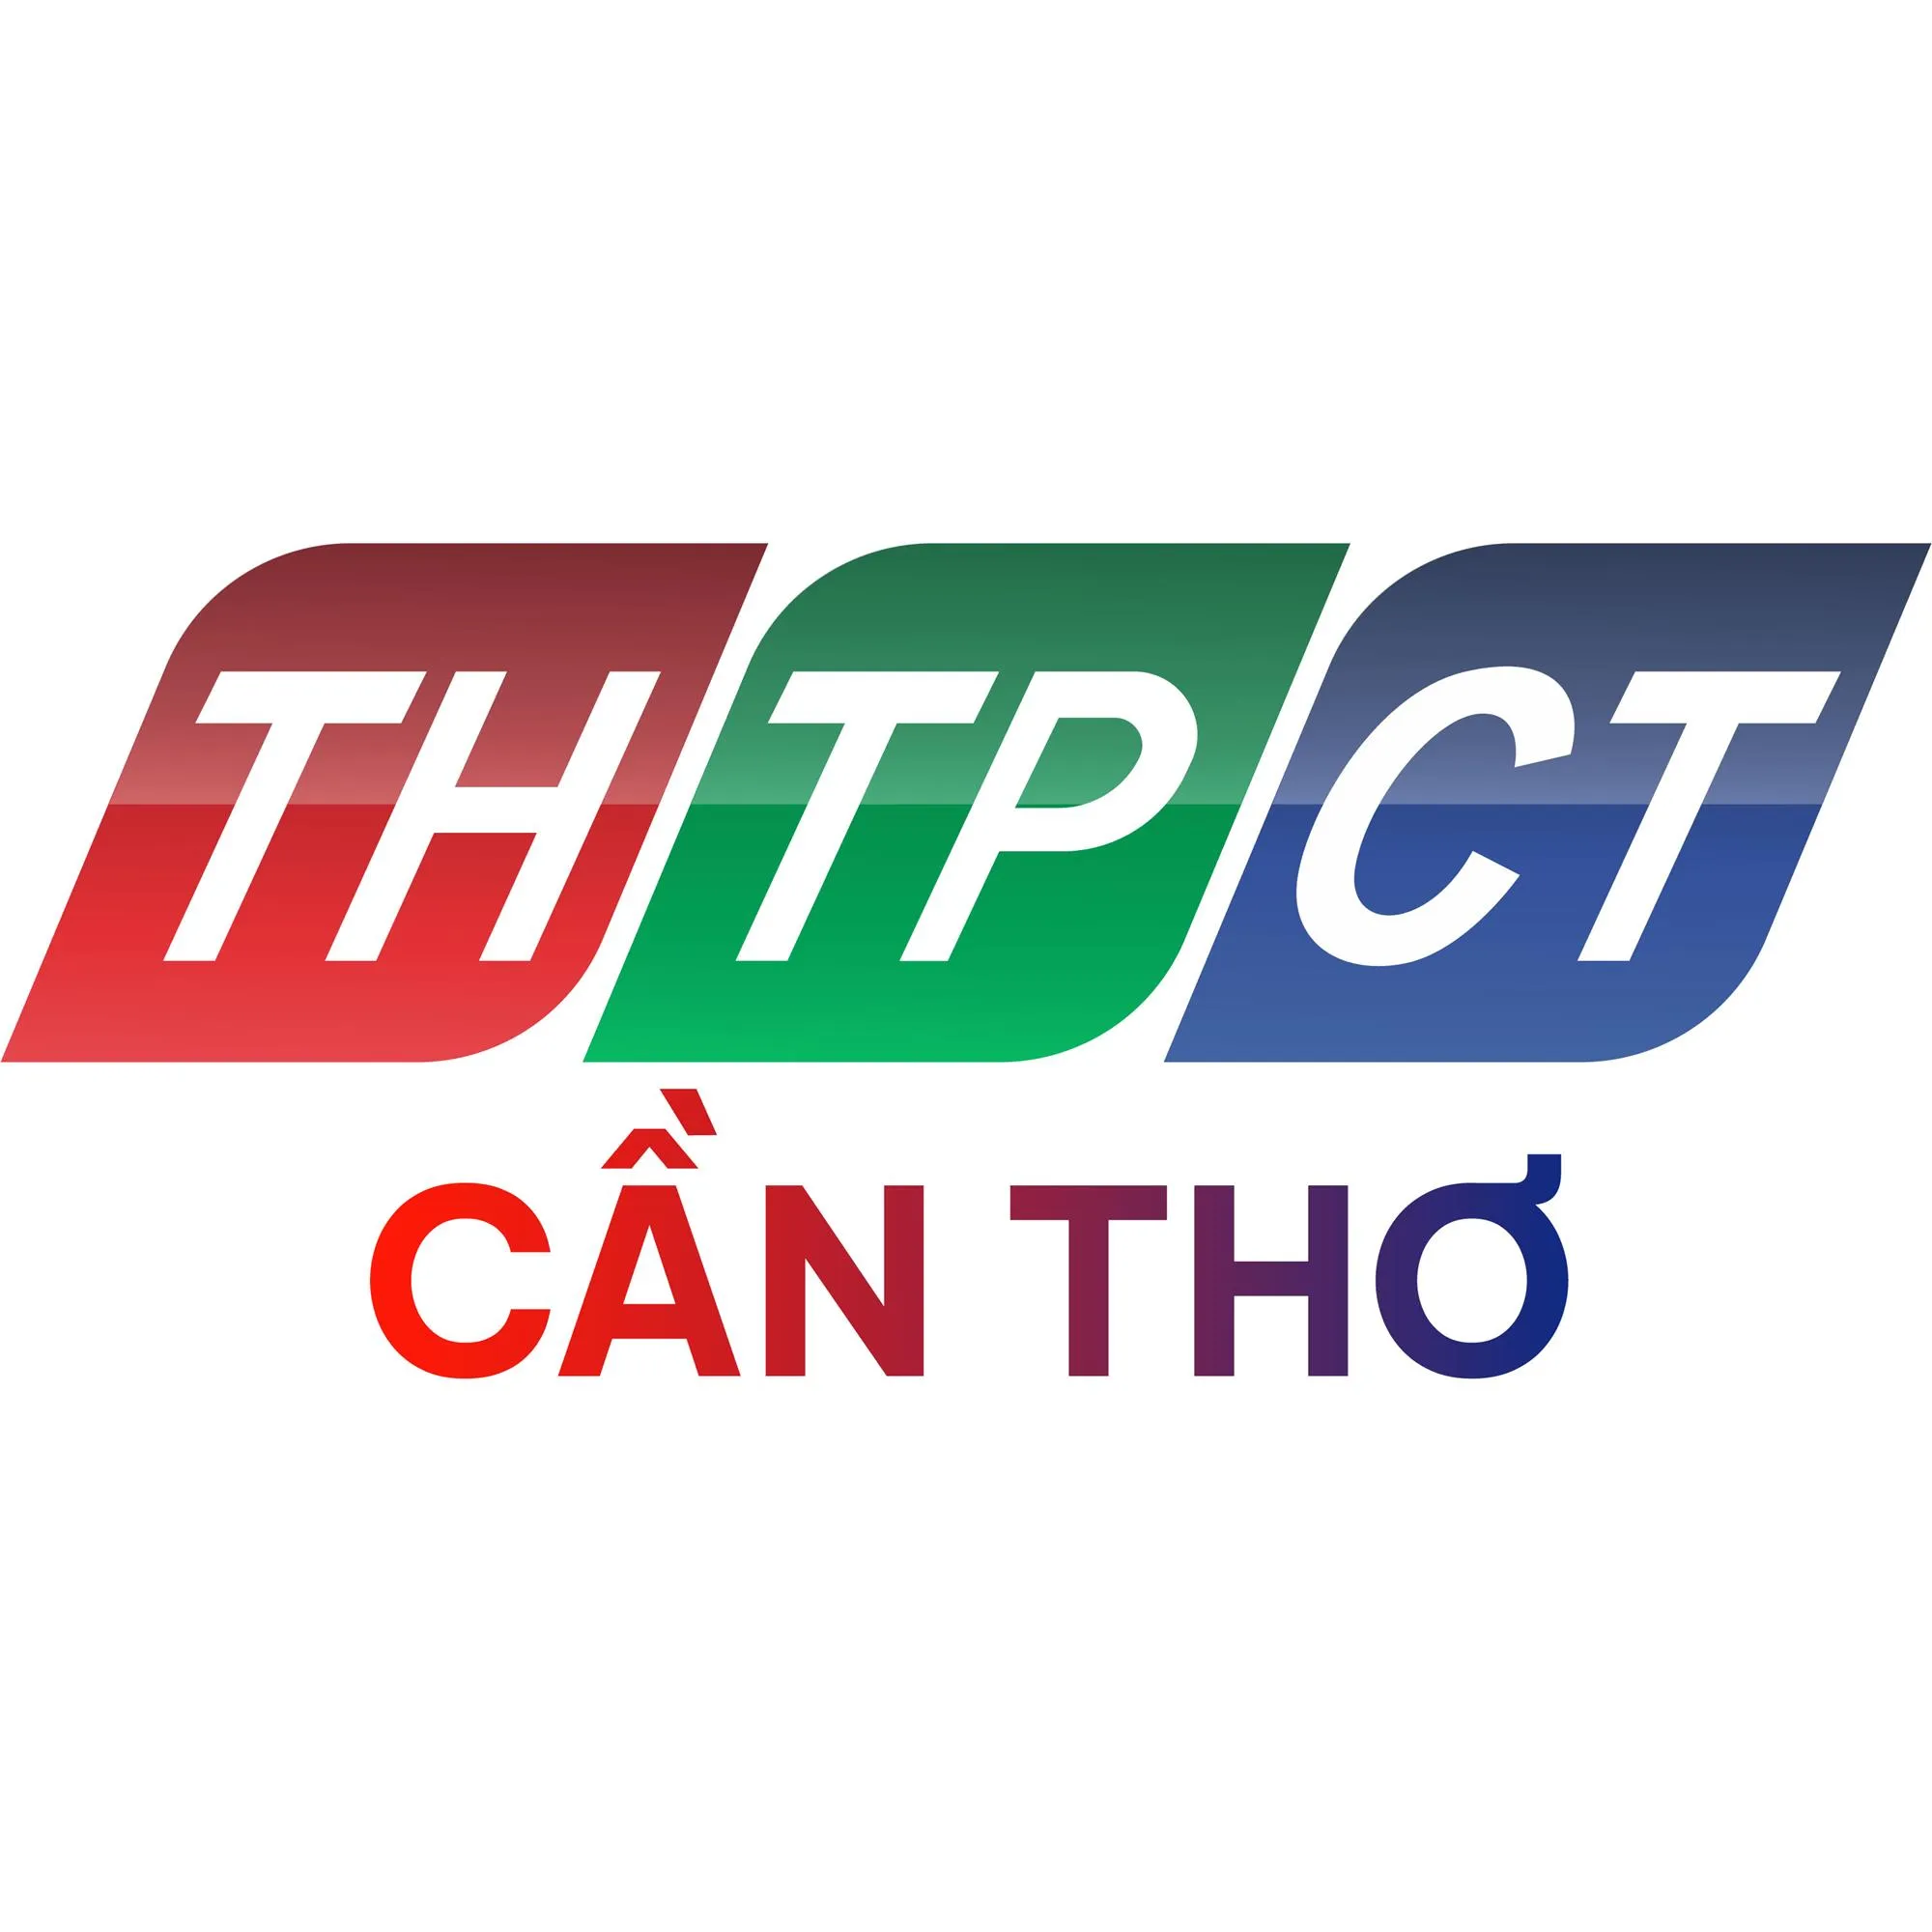 Đài radio Cần Thơ THTPCT - Kênh FM 93.7 MHz